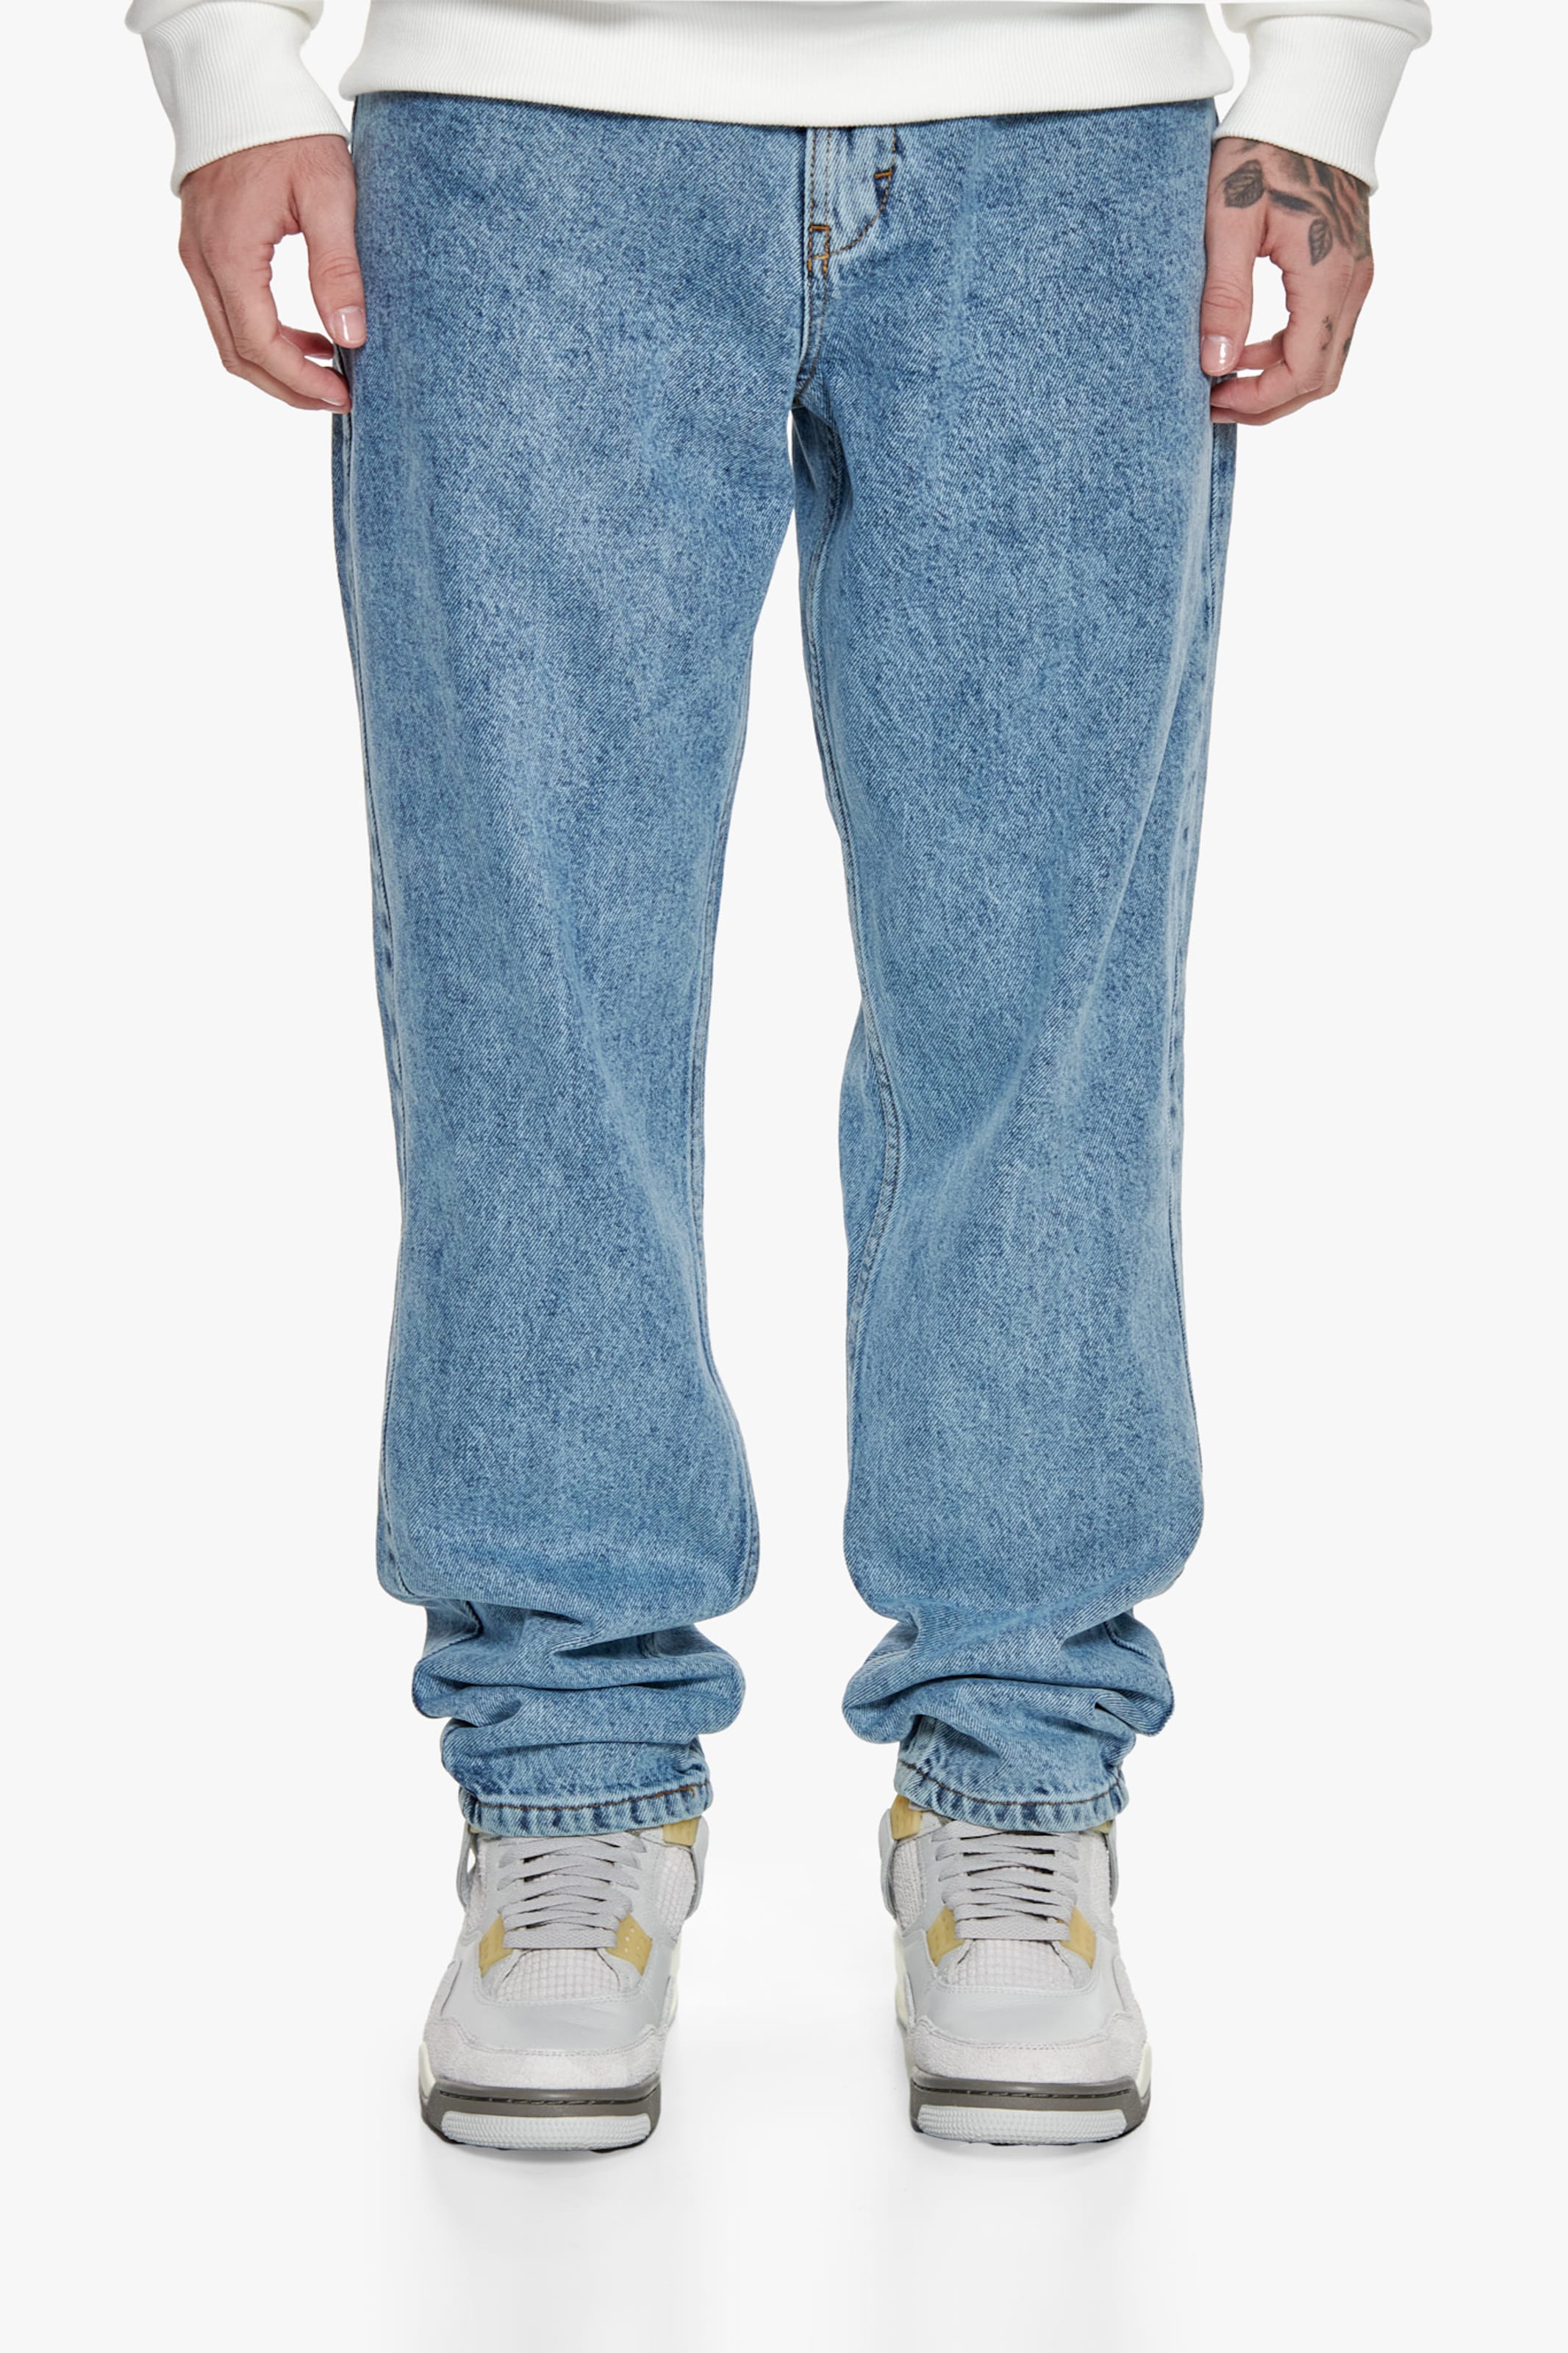 Dropsize Loose Fit Jeans Mannen op kleur blauw, Maat L